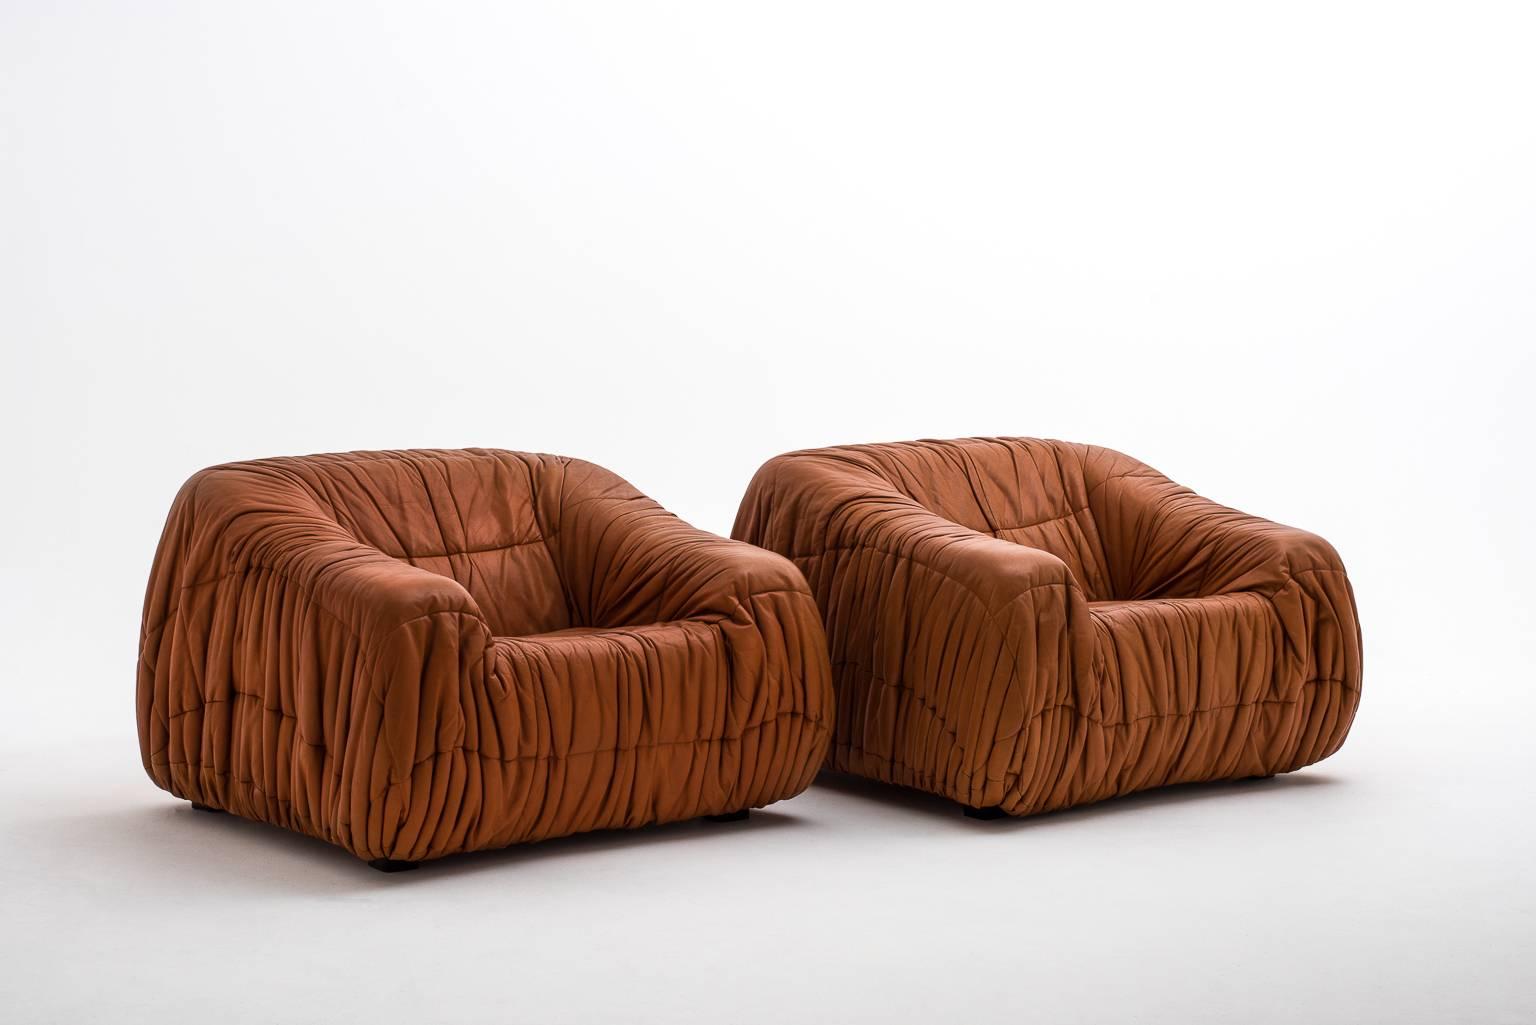 Italian Distinctive 'Piumino' Lounge Chairs by De Pas D'urbino & Lomazzi for Dell'Oca